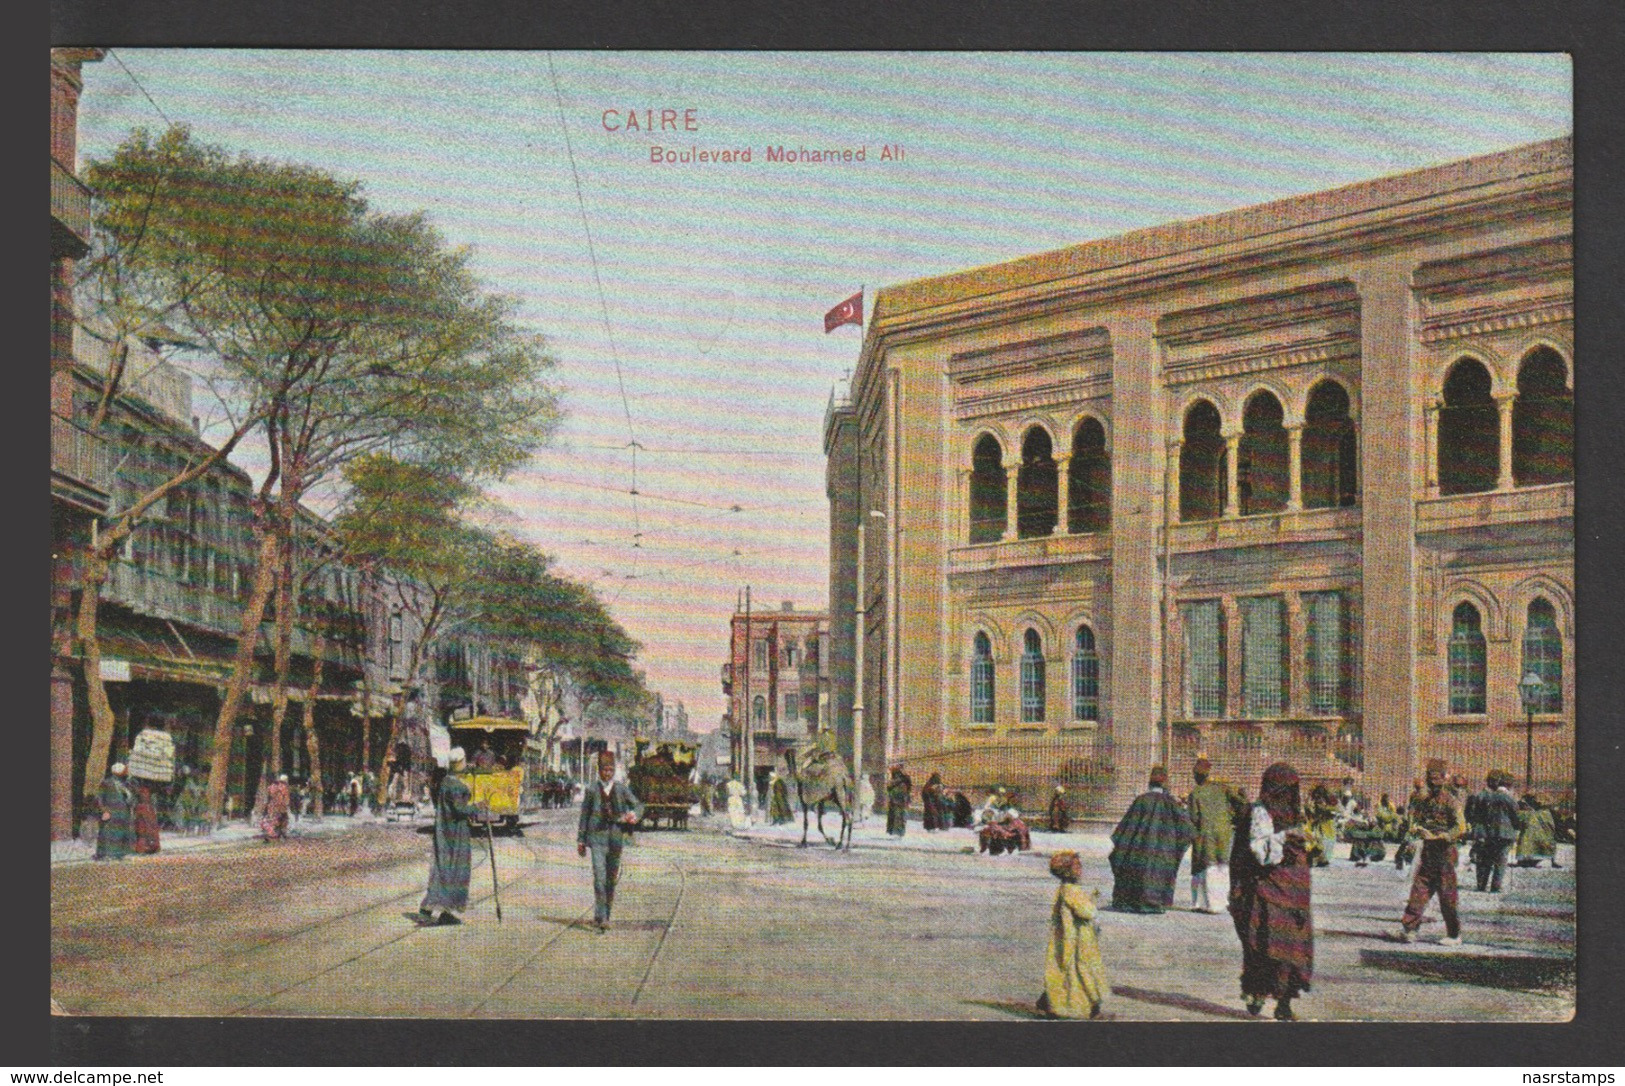 Egypt - Very Rare - Vintage Post Card - Mohamed Ali Boulevard - Cairo - 1866-1914 Khedivate Of Egypt